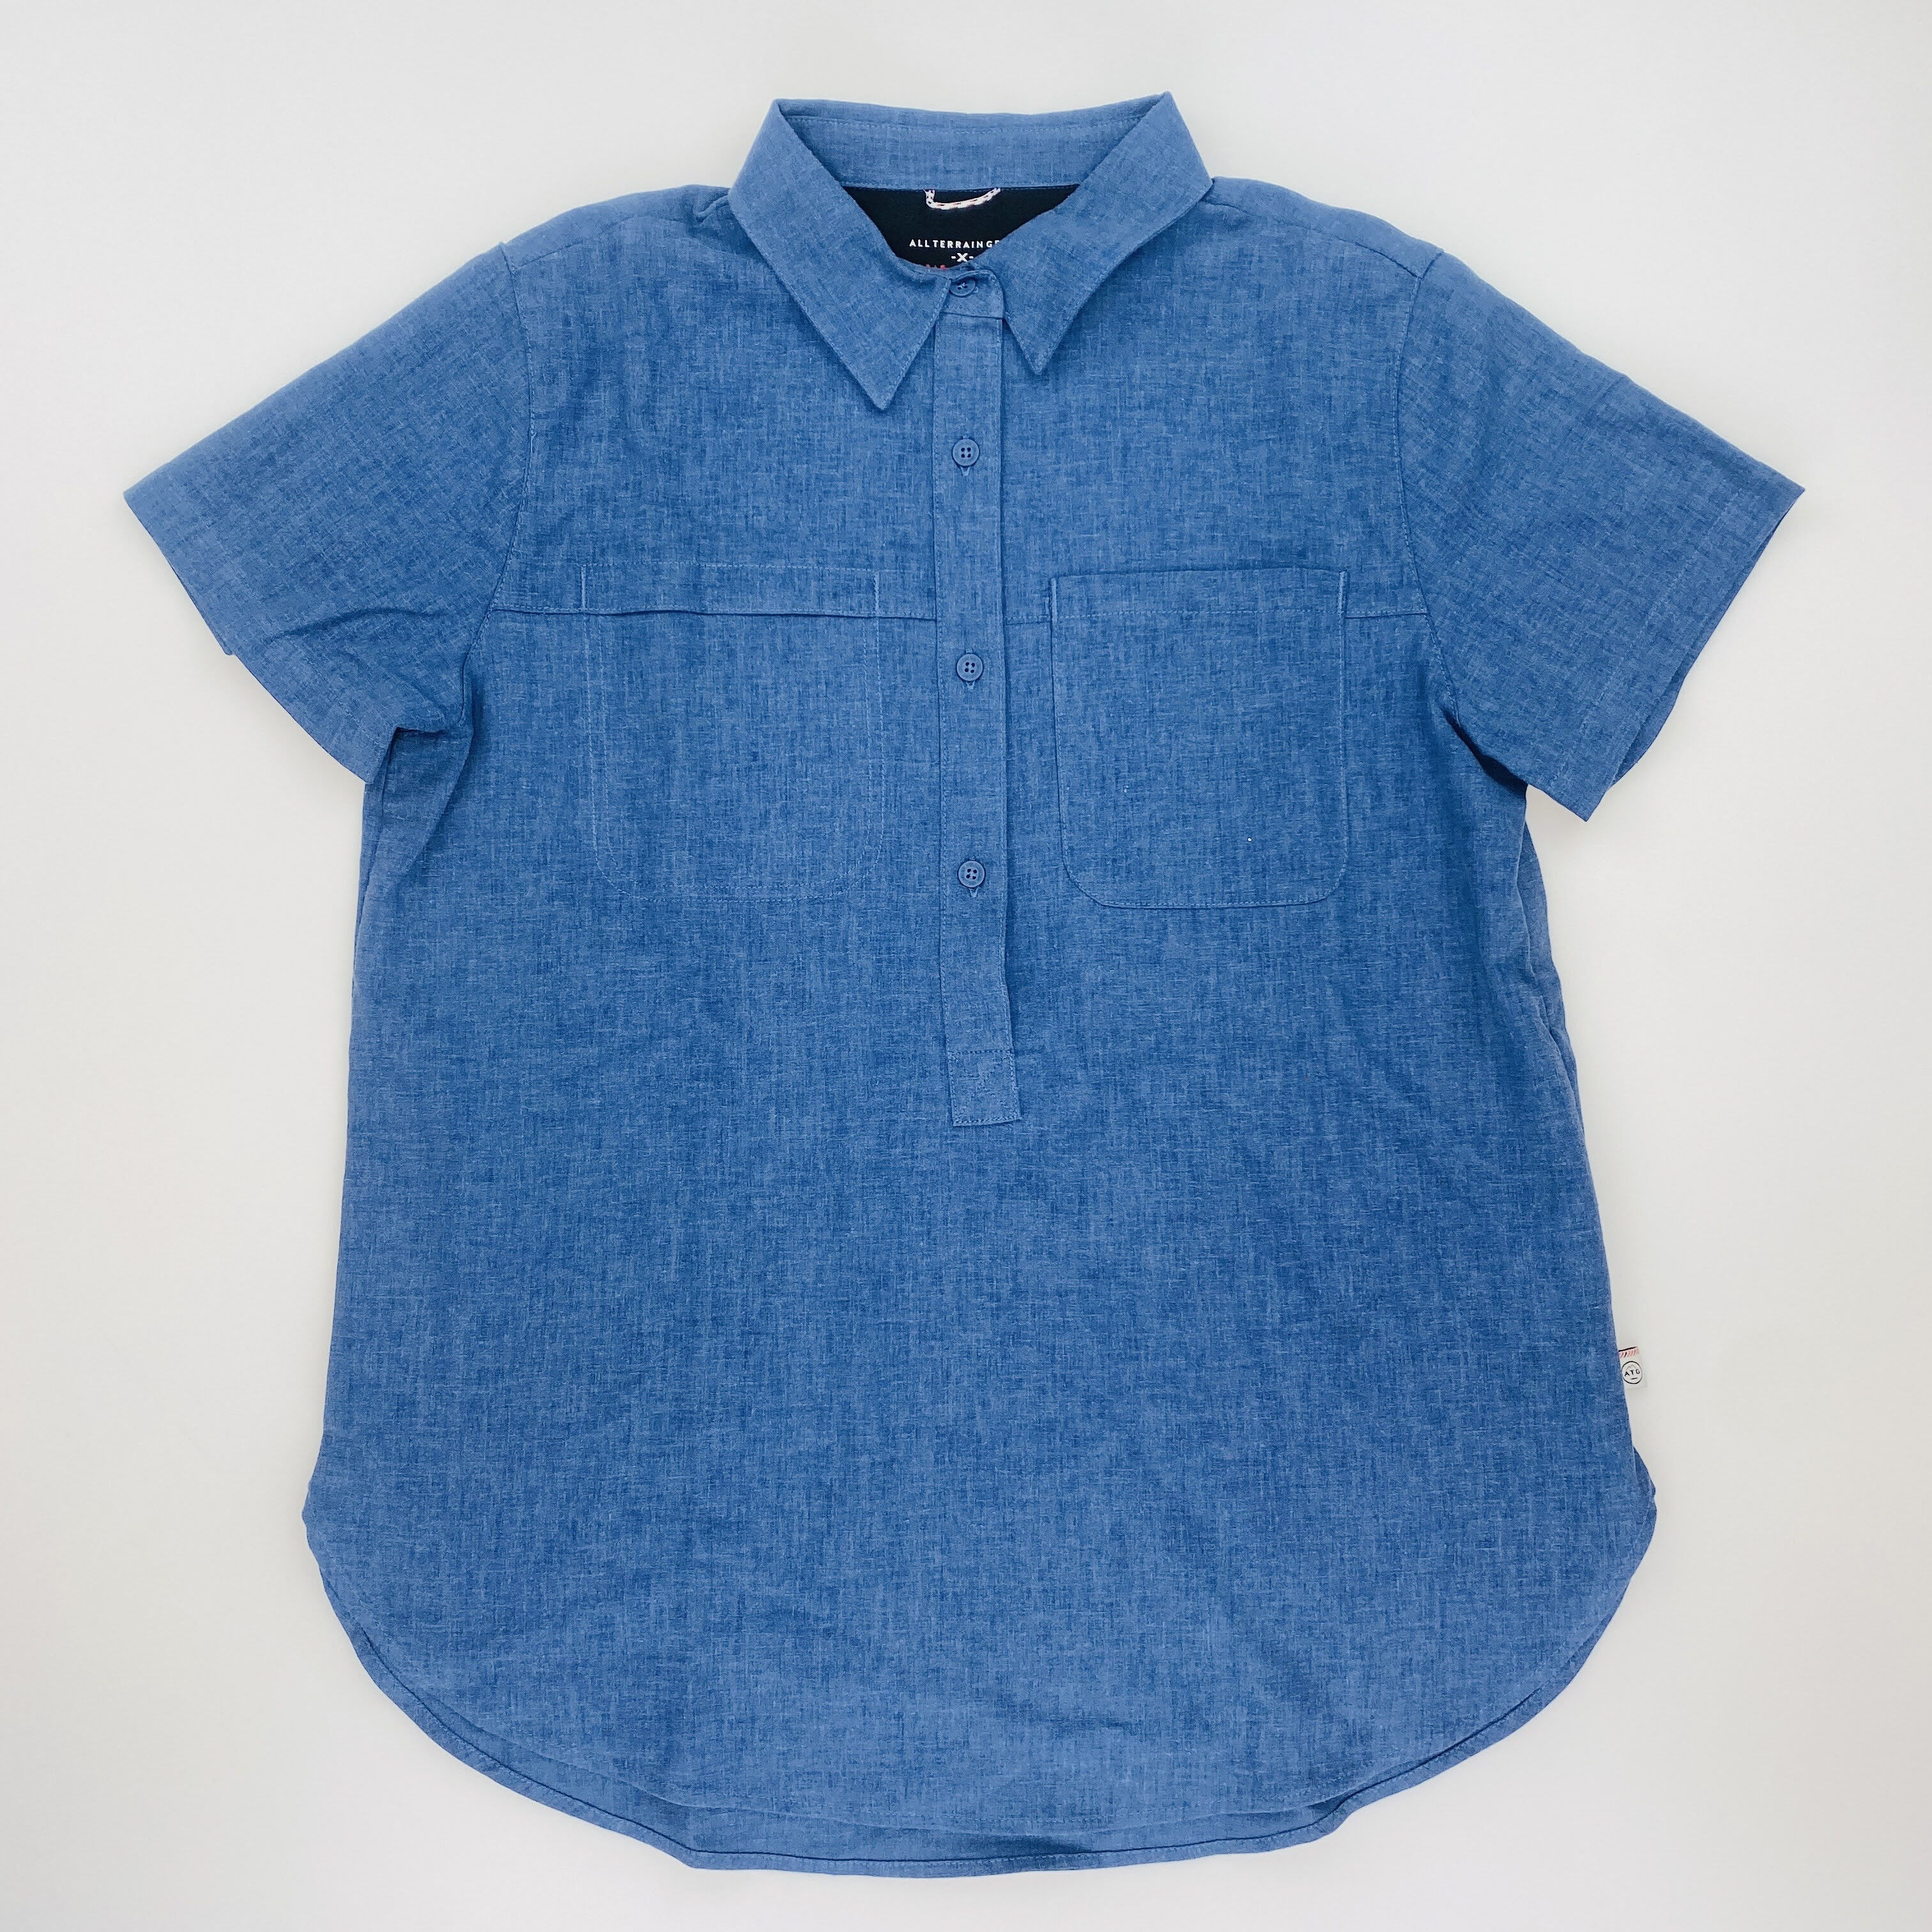 Wrangler Popover Shirt - Seconde main Sweatshirt femme - Bleu - S | Hardloop